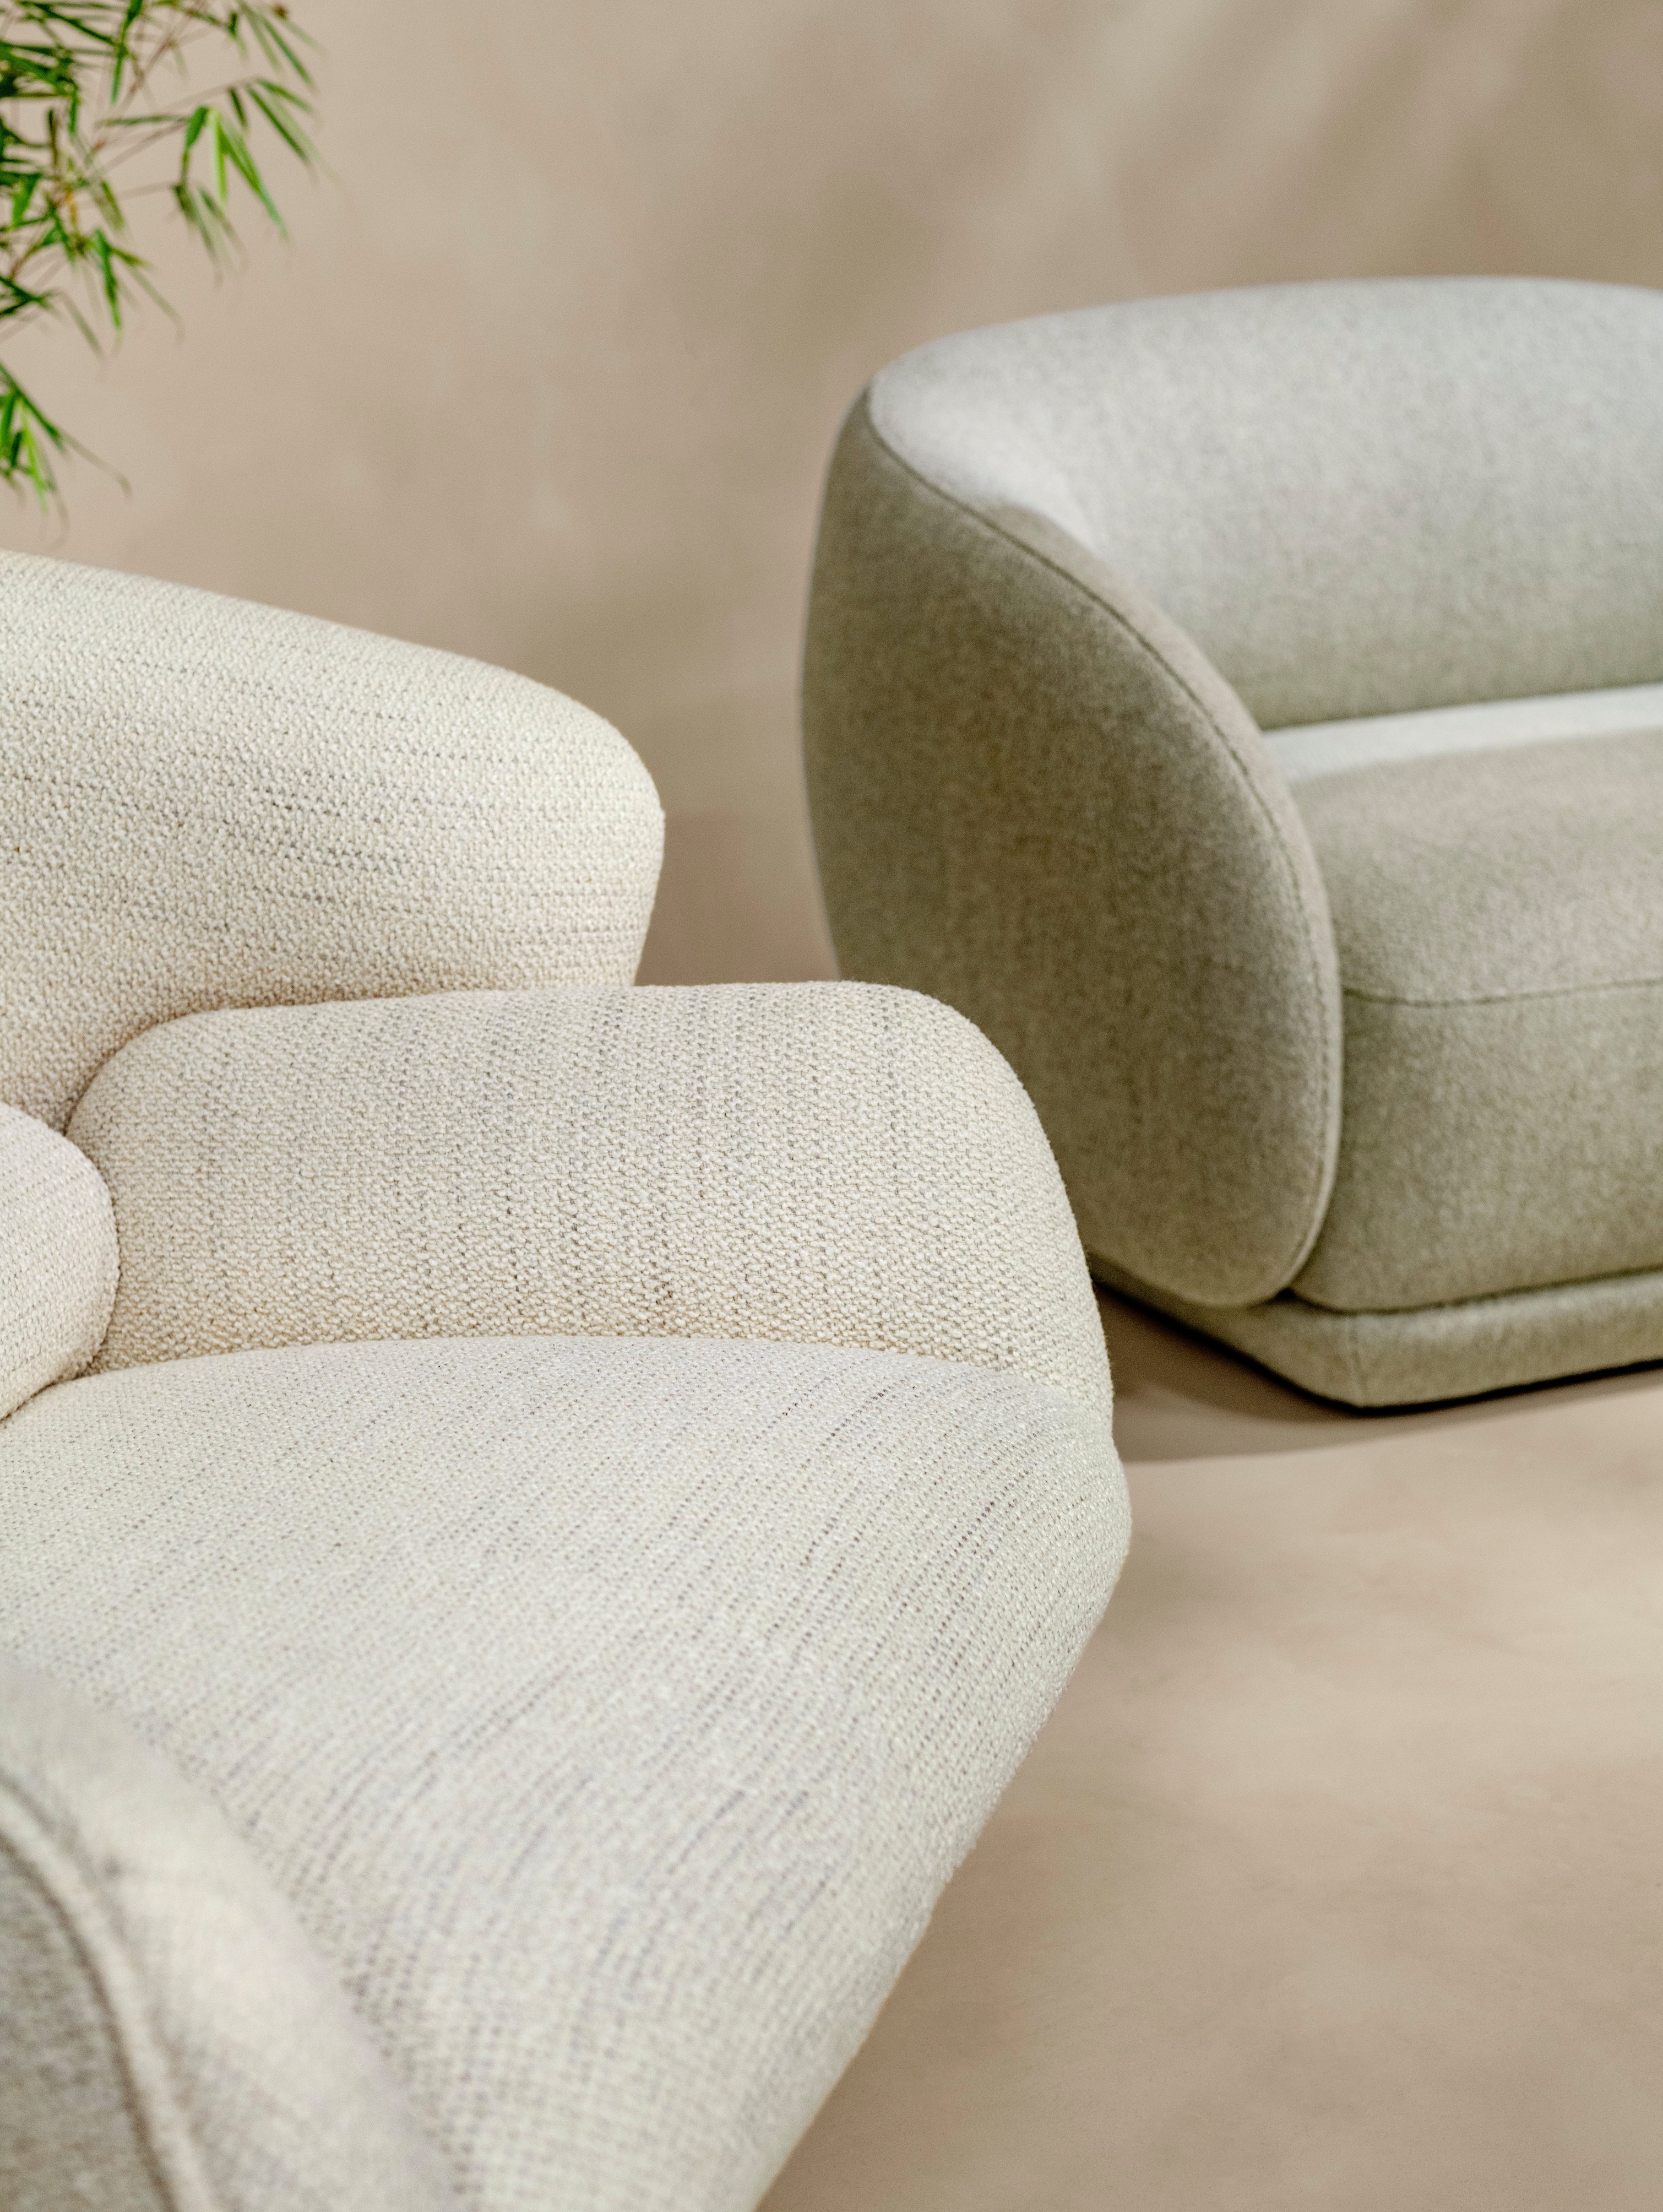 Кресло Fusion с обивкой из ткани Lazio в сочетании с диваном-кушеткой Bolzano с обивкой из ткани Lazio светло-зеленого цвета.